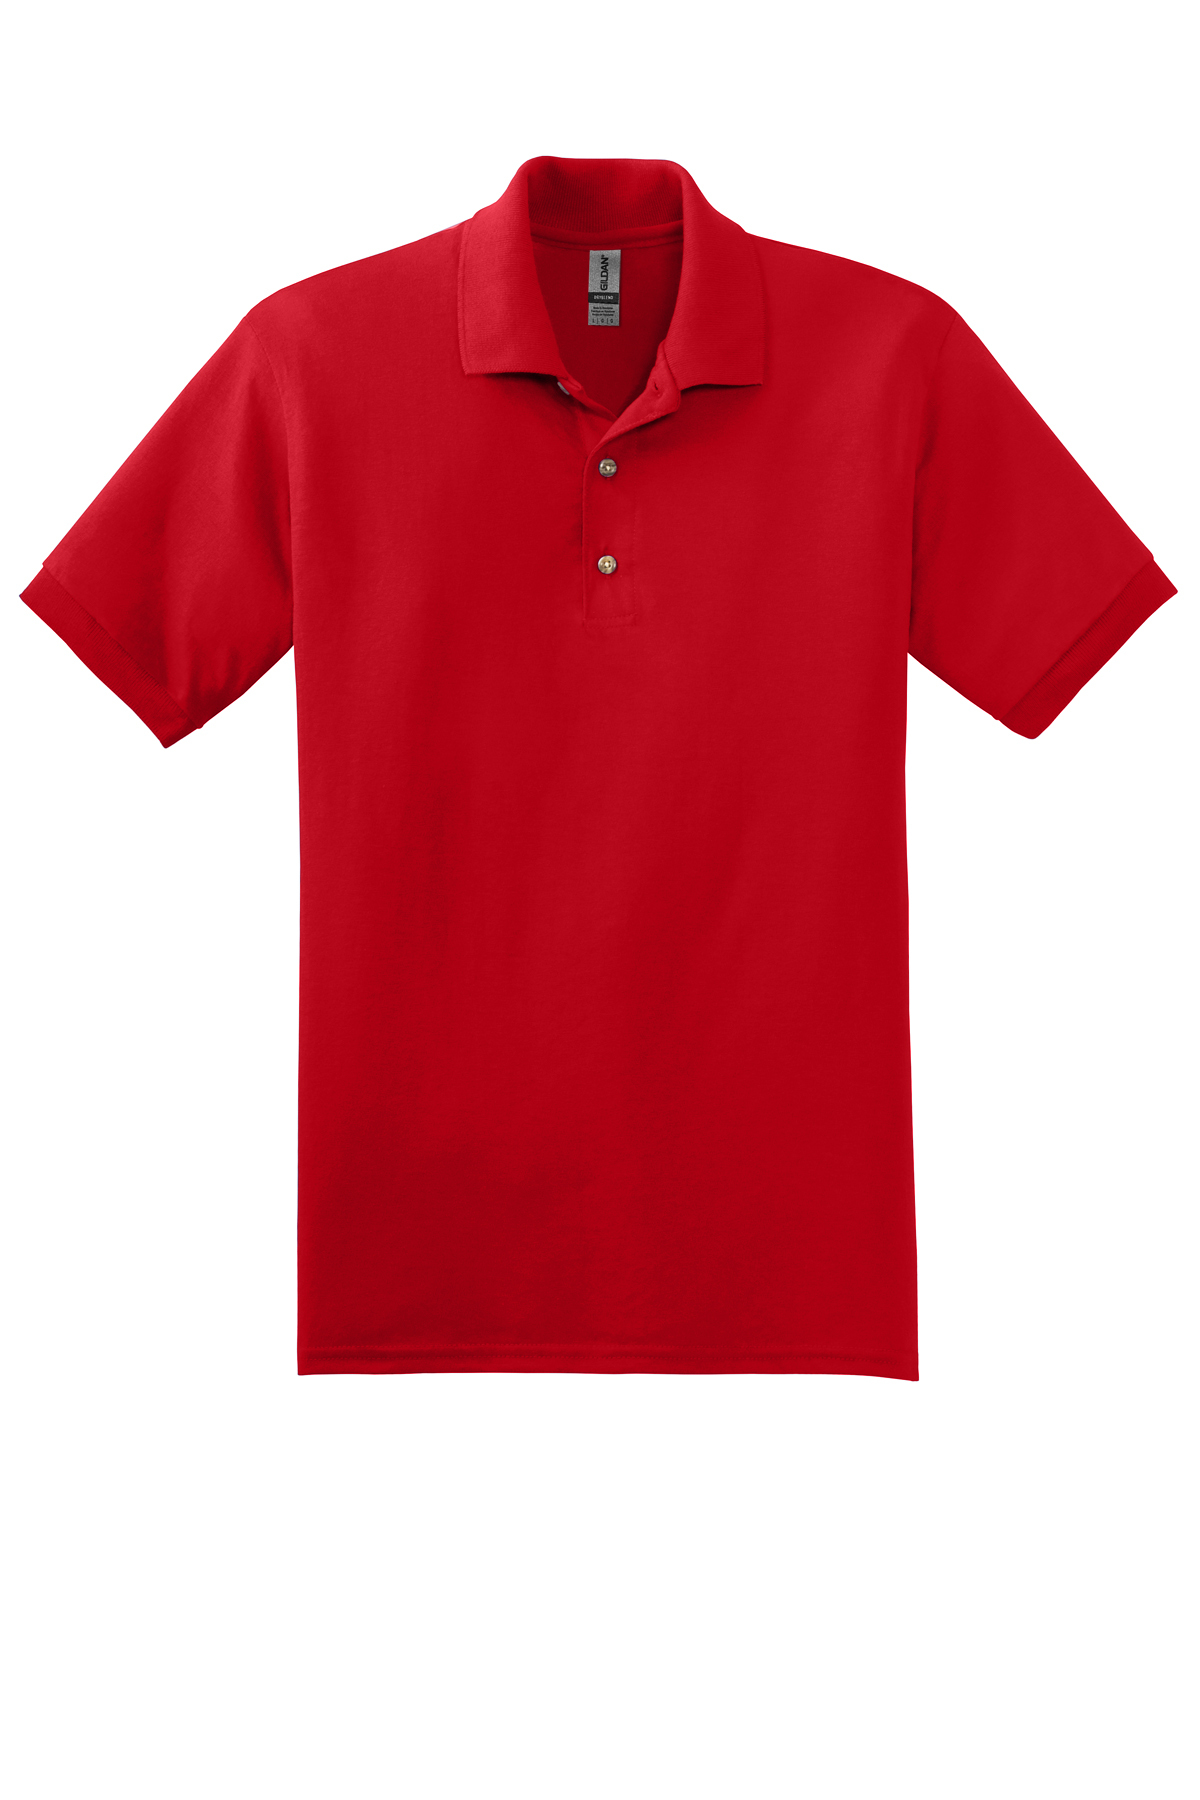 Gildan 6-ounce JerseyKnit sport shirt-8800